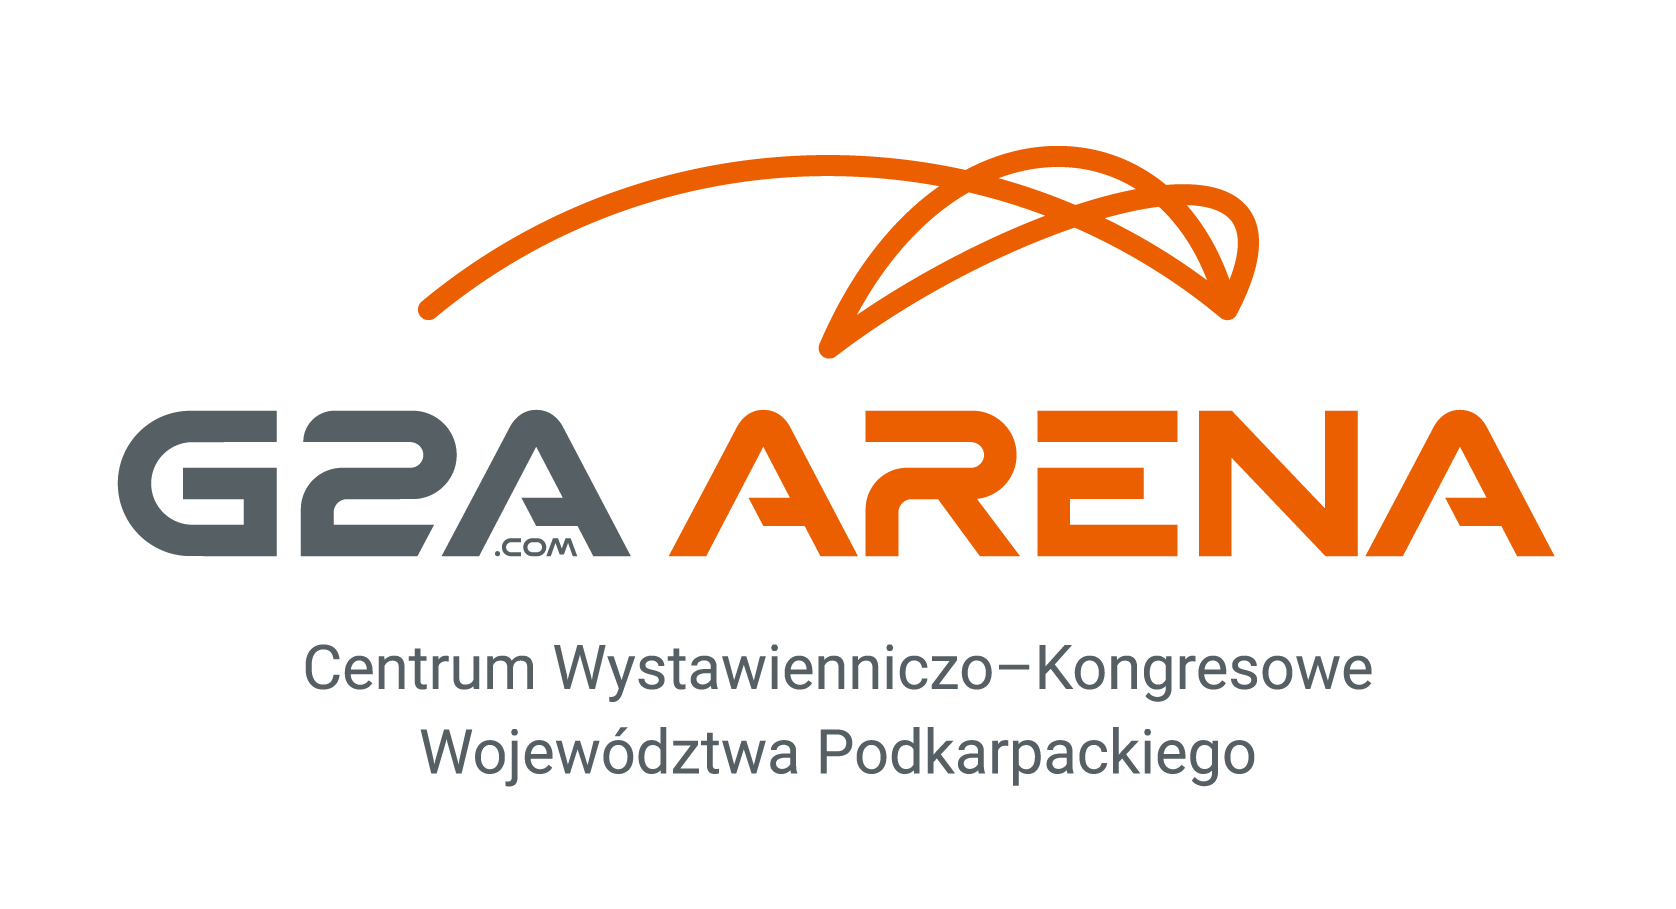 G2A Arena CEntrum Wystawienniczo-Kongresowe Województwa Podkarpackiego - logo